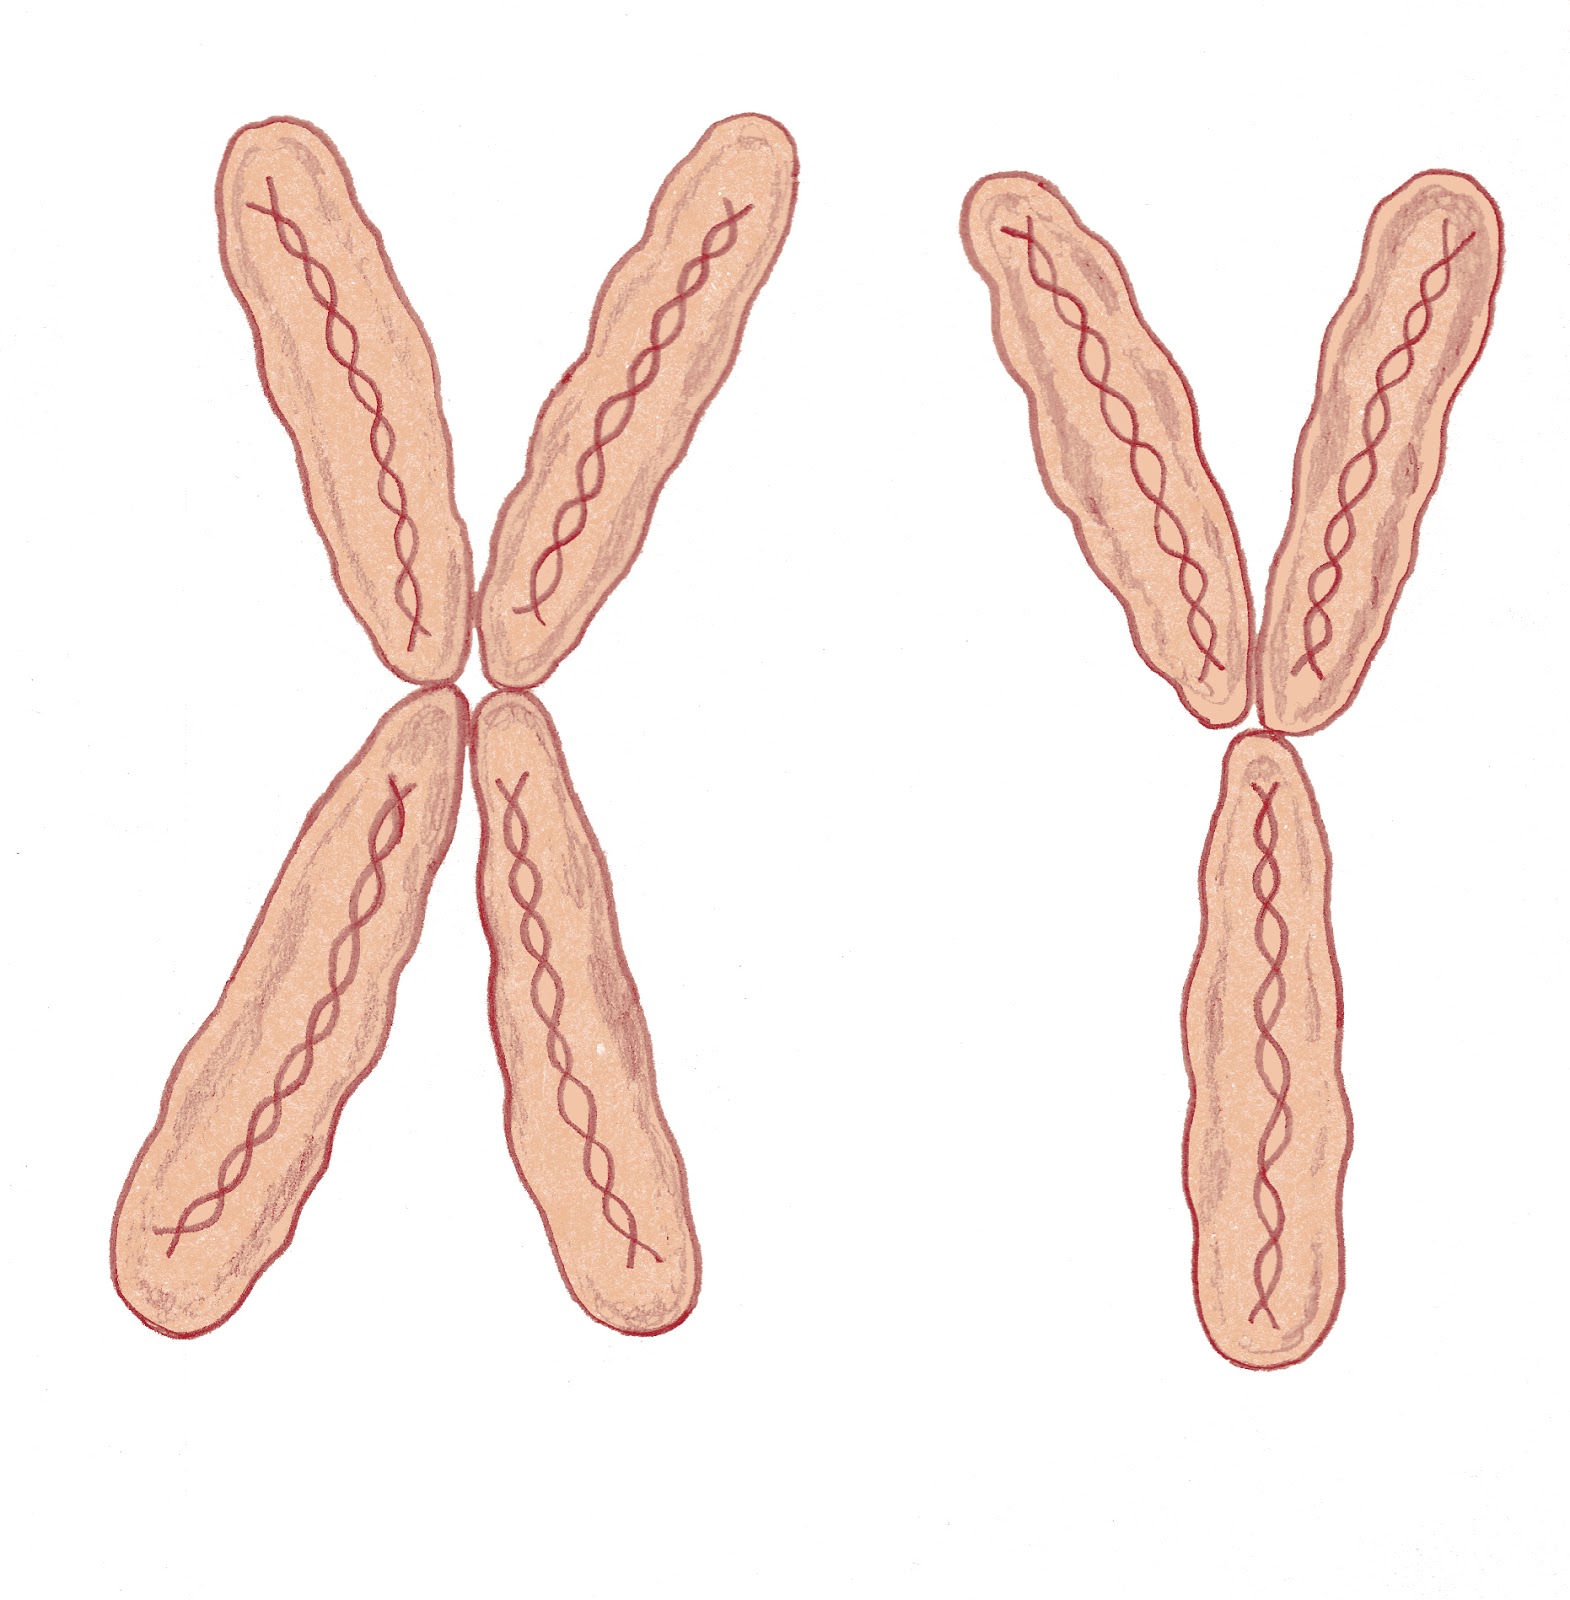 Х И Игрек хромосомы. Женские и мужские хромосомы. Мужские хромосомы. Женские хромосомы. Х хромосома это мужская